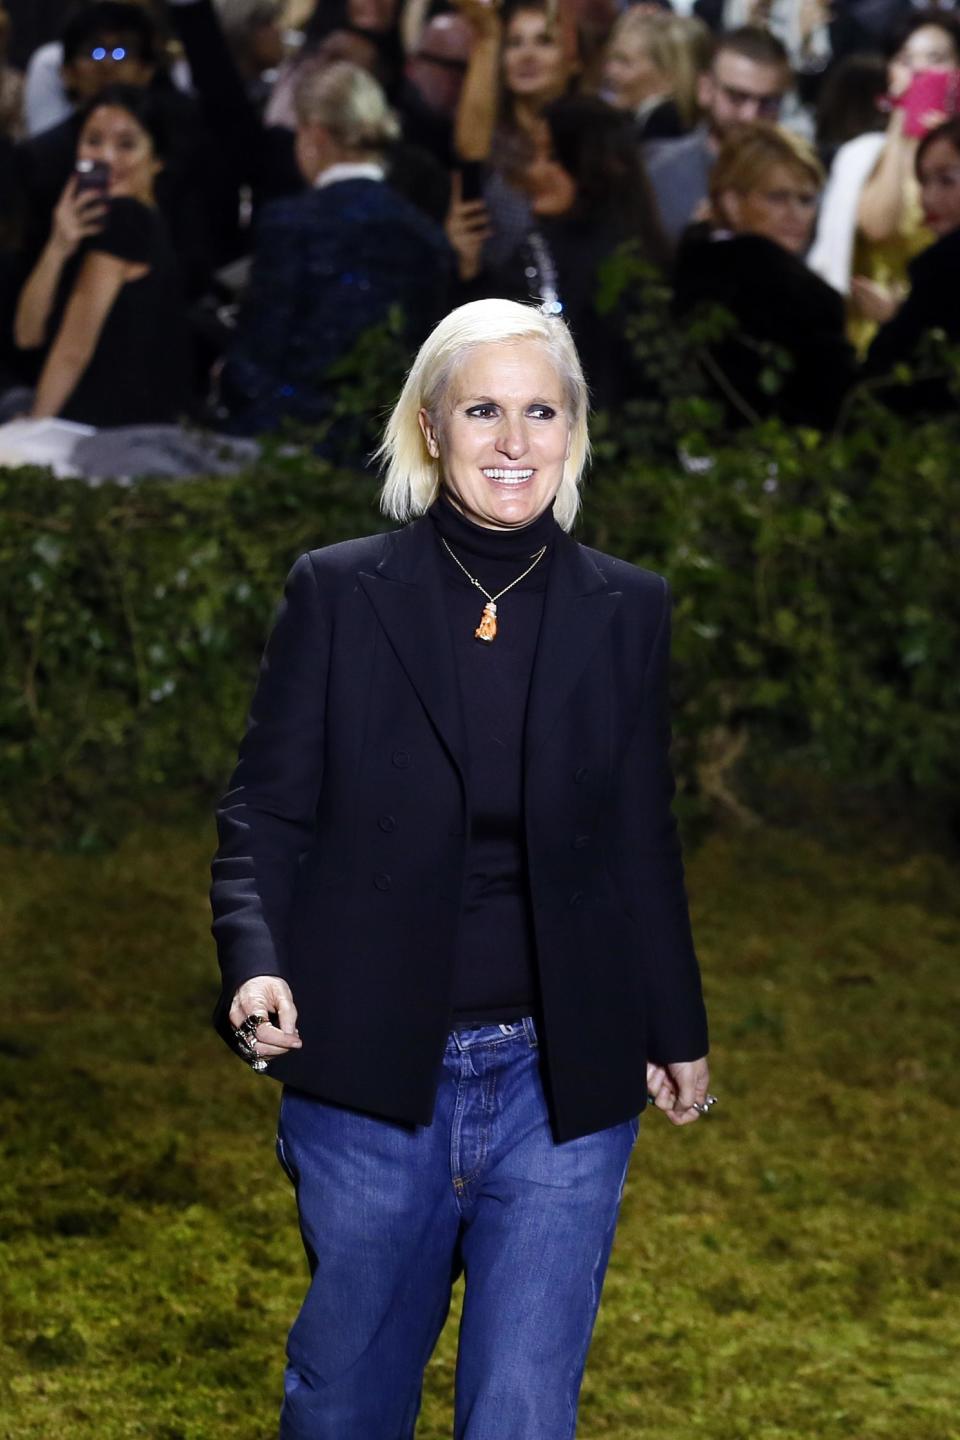 La diseñadora italiana Maria Grazia Chiuria recibe el aplauso del público tras el desfile de su colección de alta costura para Christian Dior primavera verano 2017 en París, el lunes 23 de enero de 2017. (Foto AP/Francois Mori)